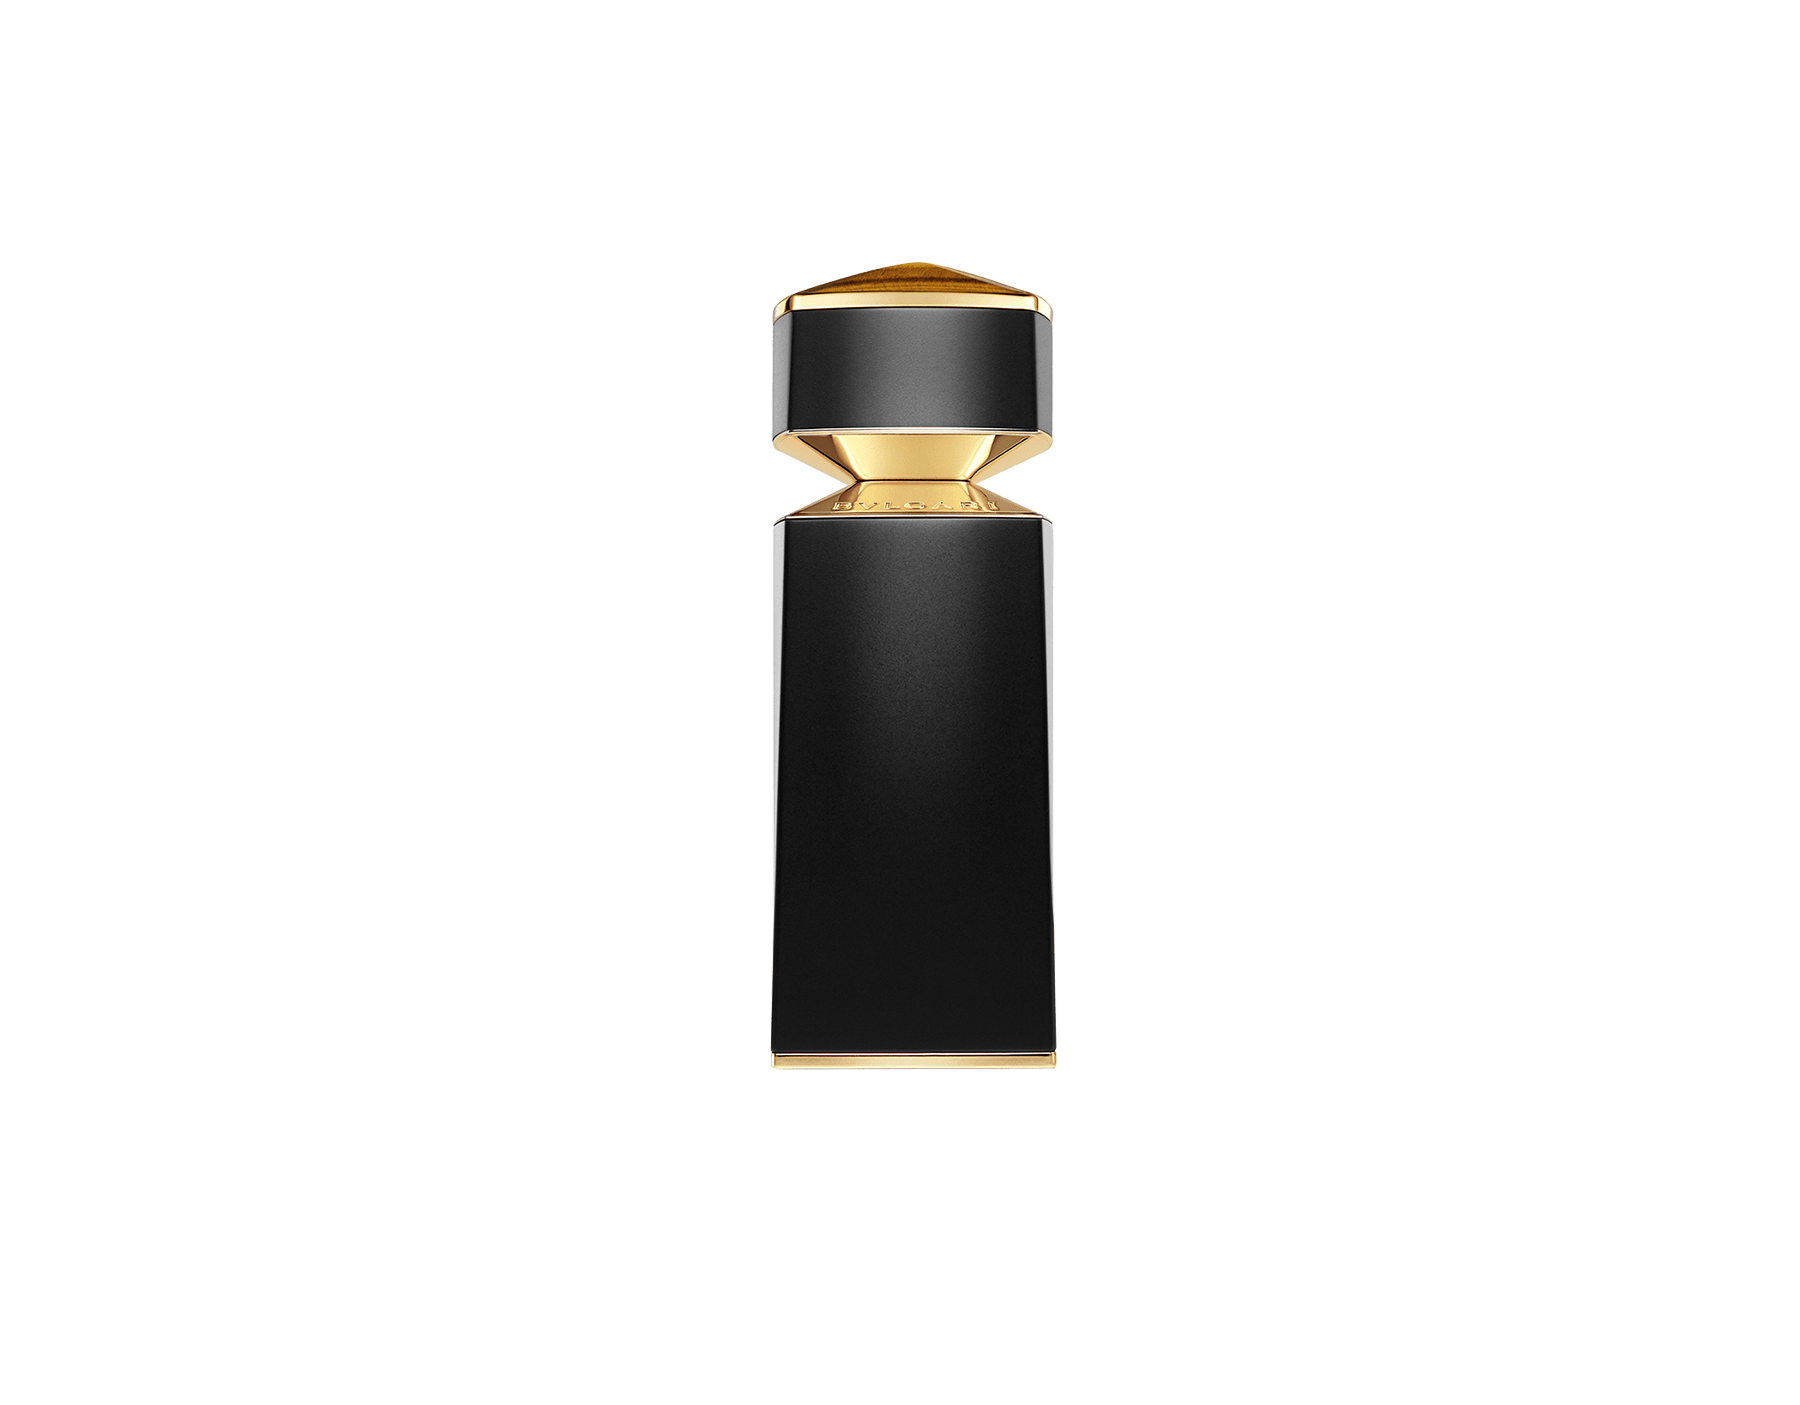 Le Gemme TYGAR Eau de Parfum 3.4 oz/100 